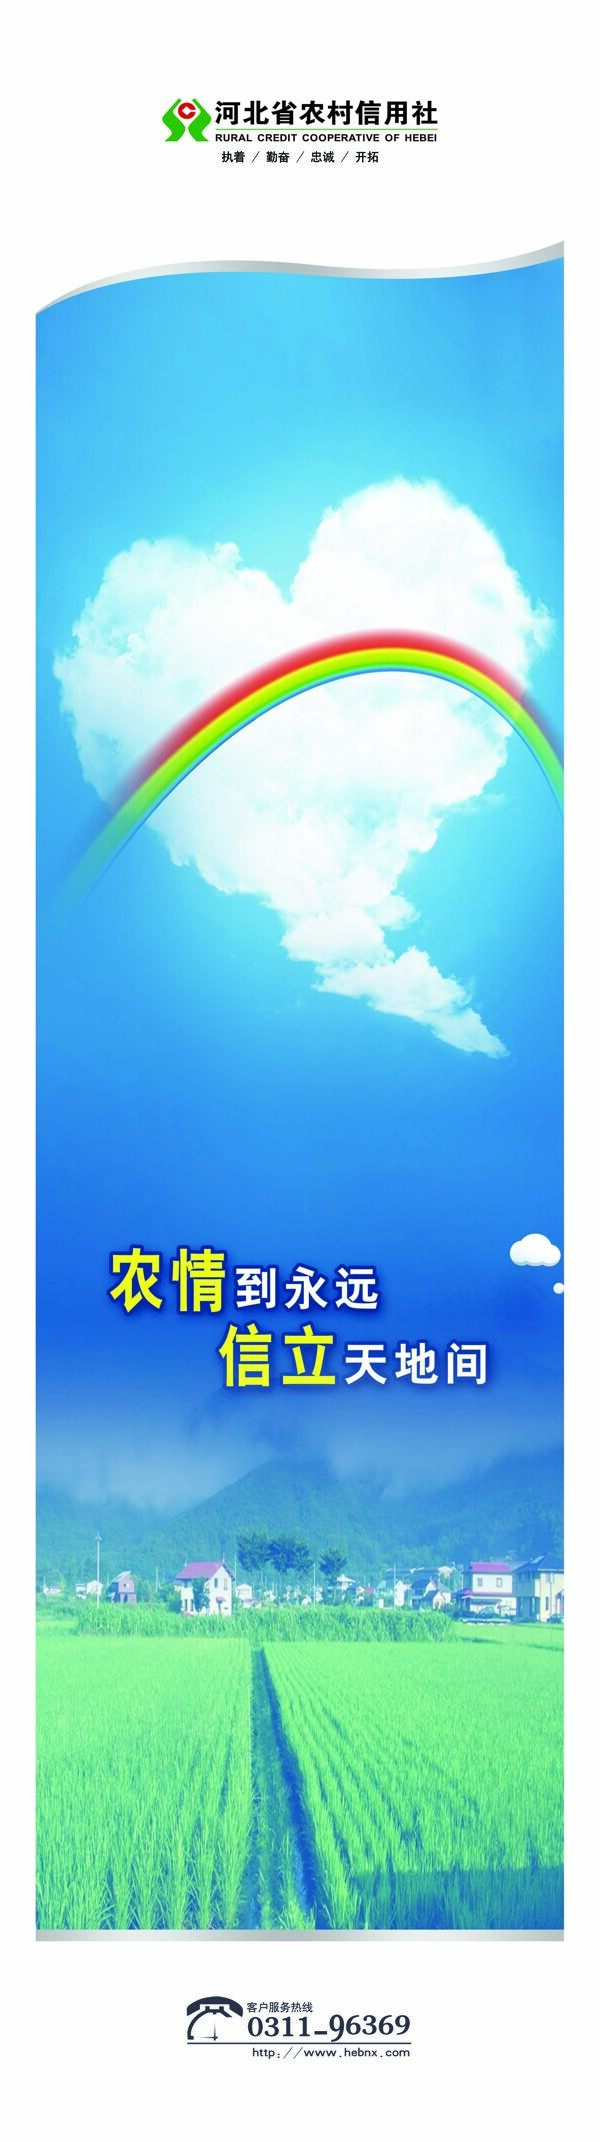 河北省农村信用社图片